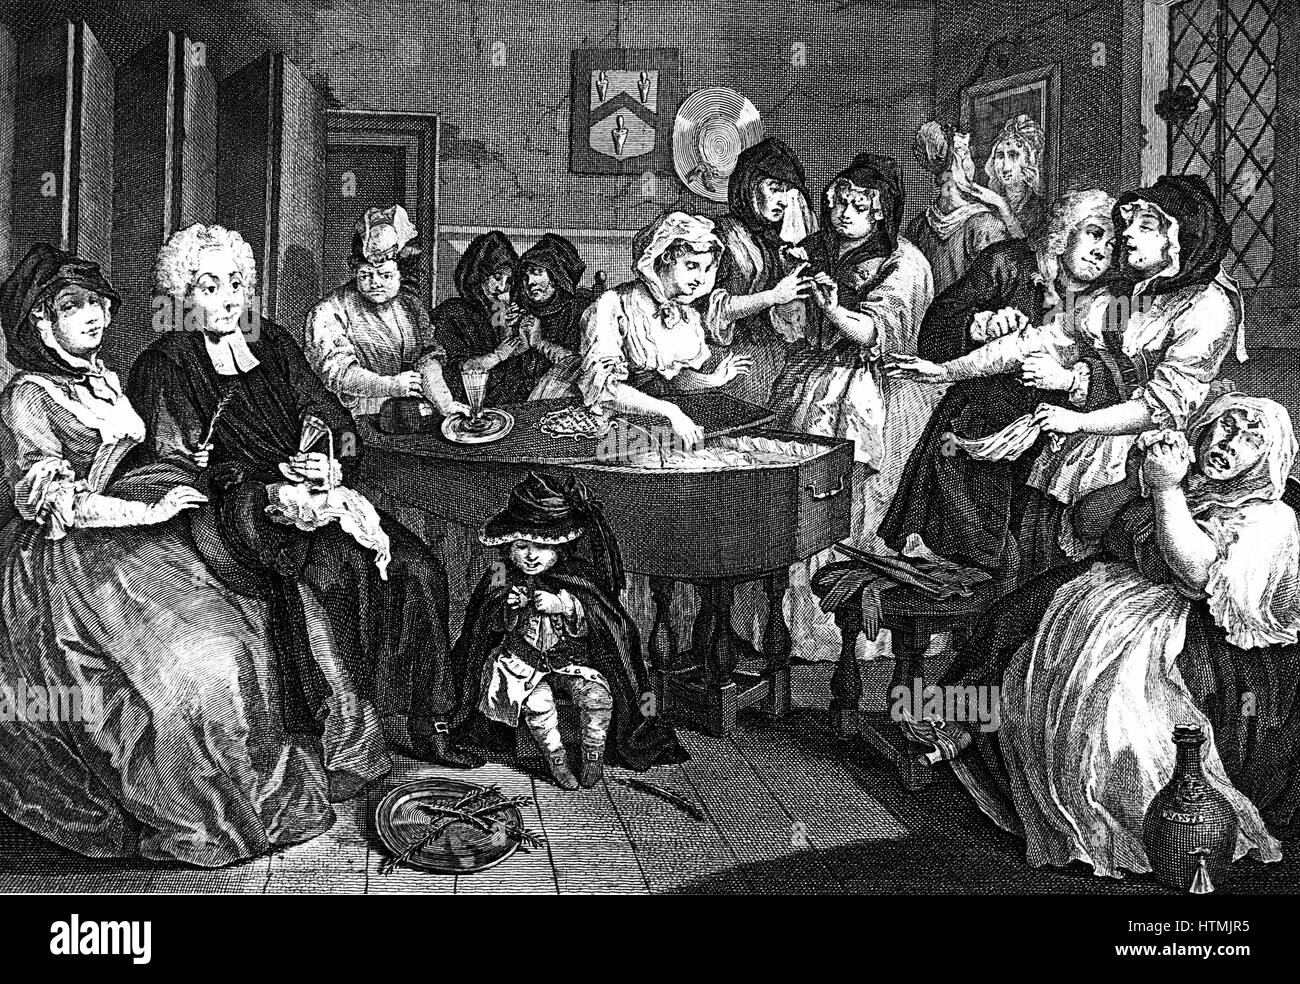 Kate Hackabout, Harlot, wird in ihrem Sarg gelegt. Sechste und letzte Platte in Hogarths Serie "The Harlot es Progress" (1733). William Beckford kaufte die Originalgemälde, die bei dem Brand Fonthill 1755 zerstört wurden. Gravur Stockfoto